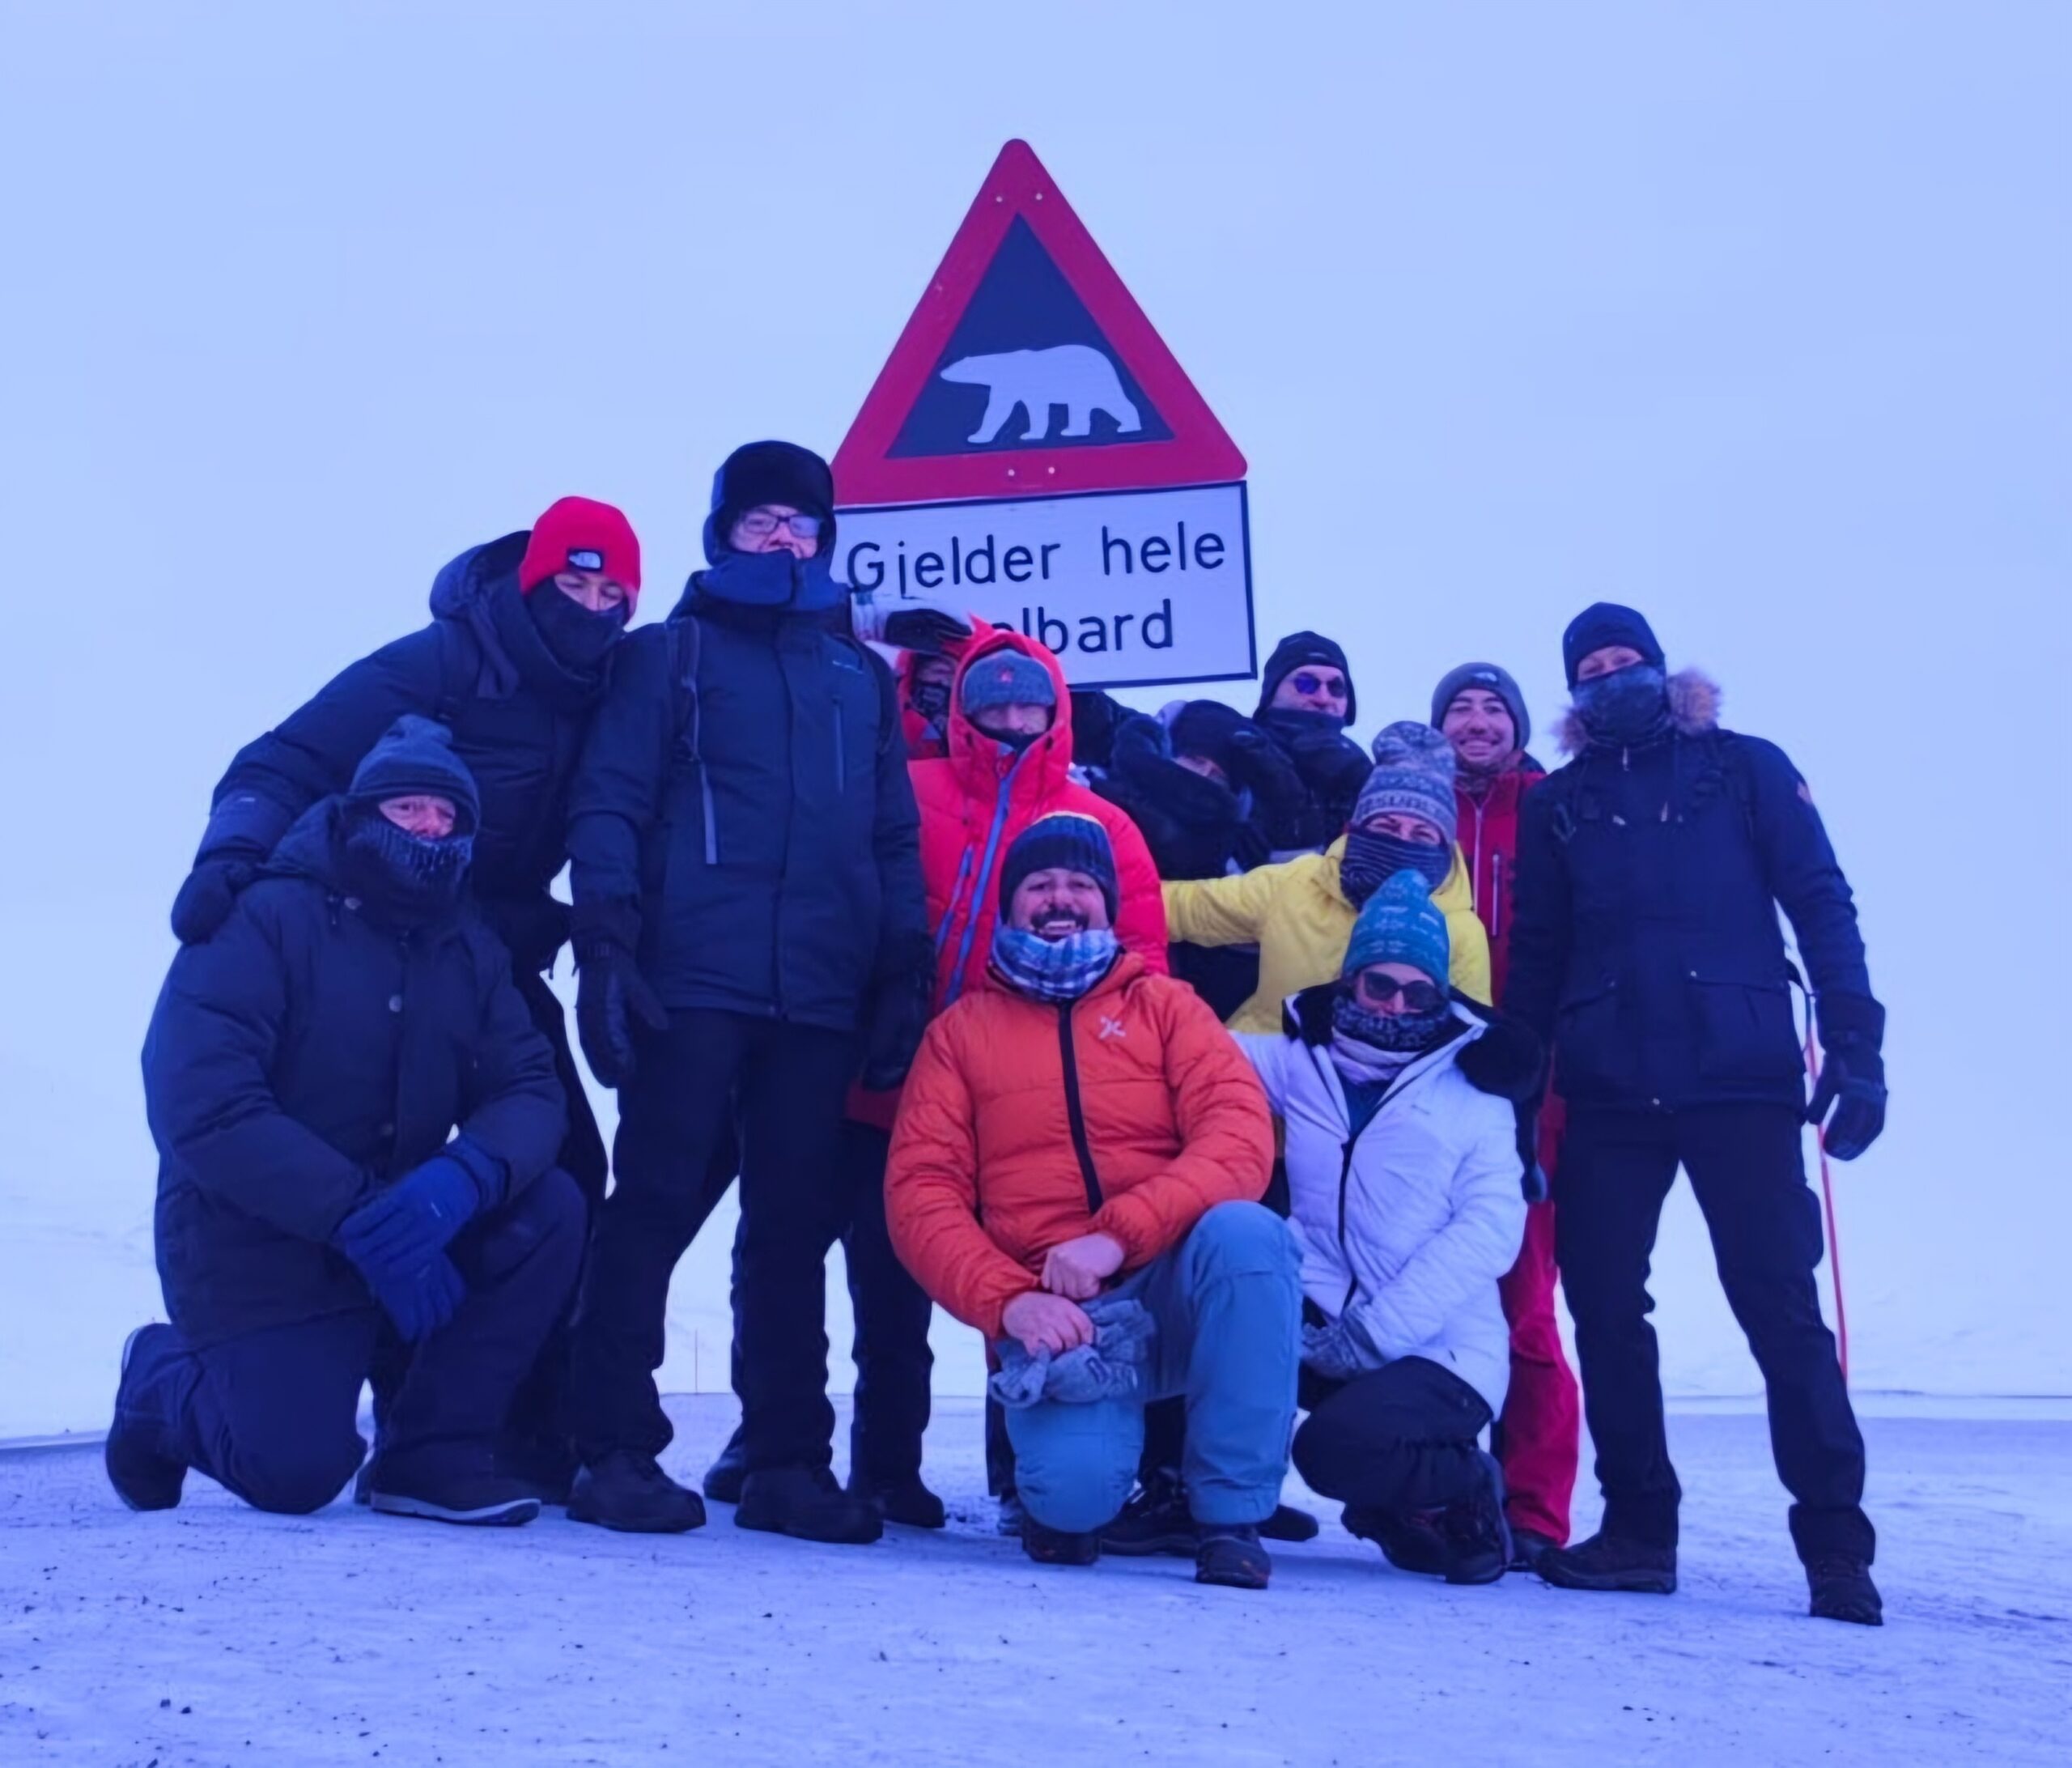 Persone in tuta da sci davanti a cartello pericolo orsi polari